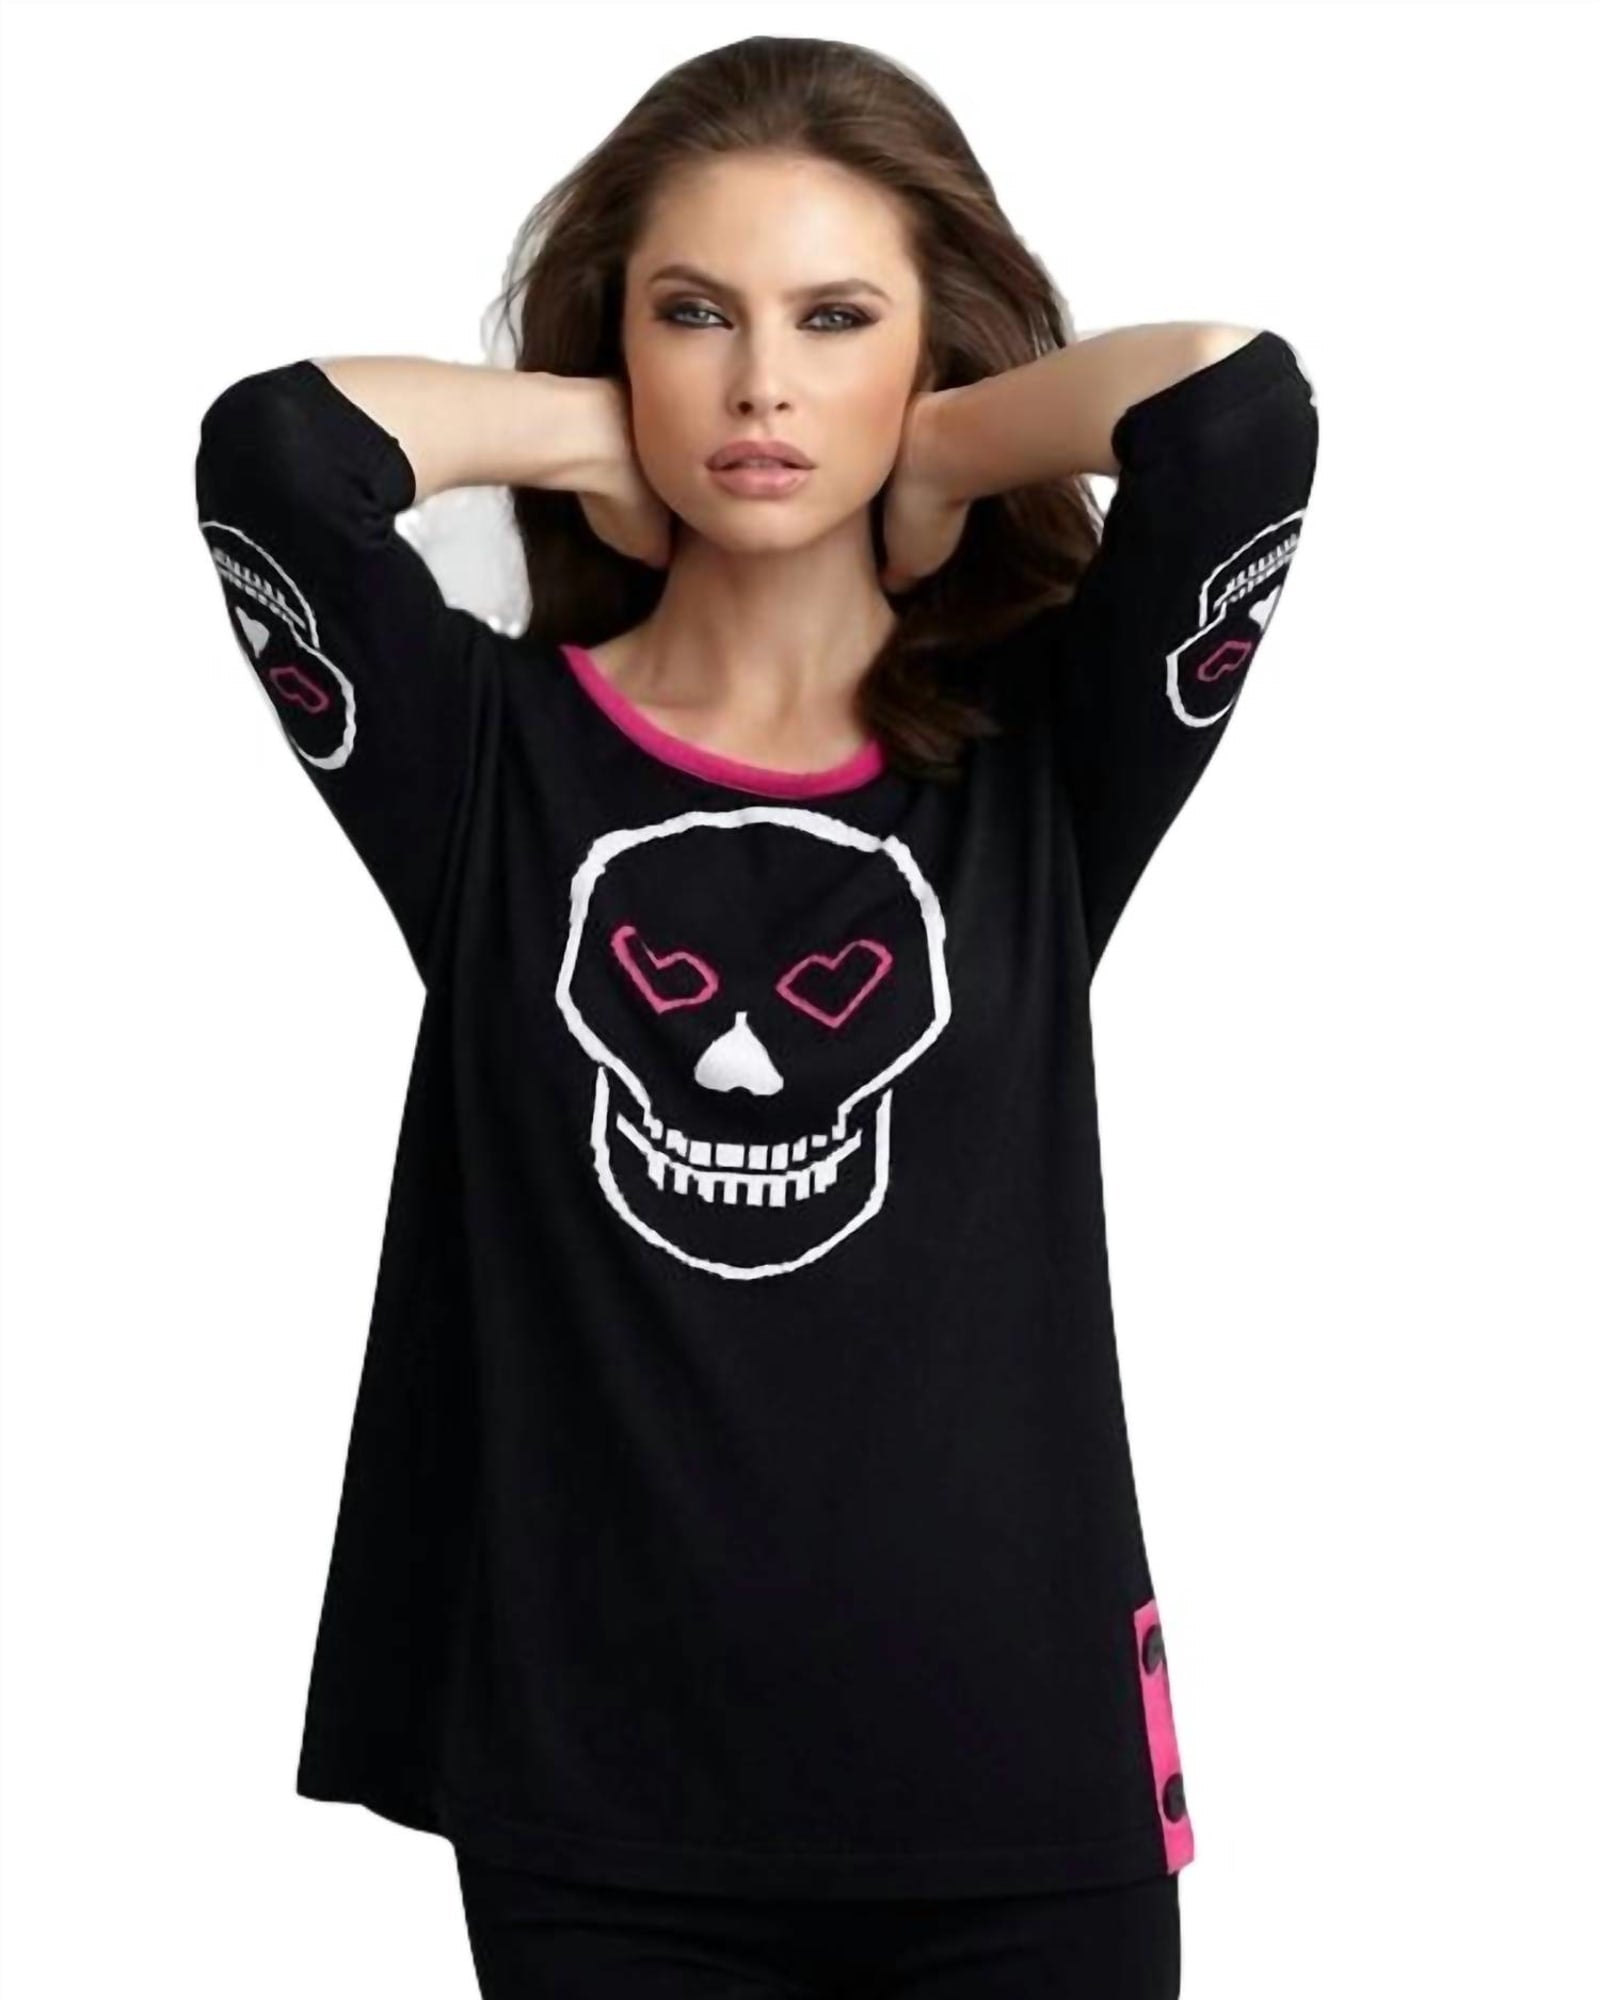 Heart & Skull Graphic Sweater in Black/Fuchsia | Black/Fuchsia